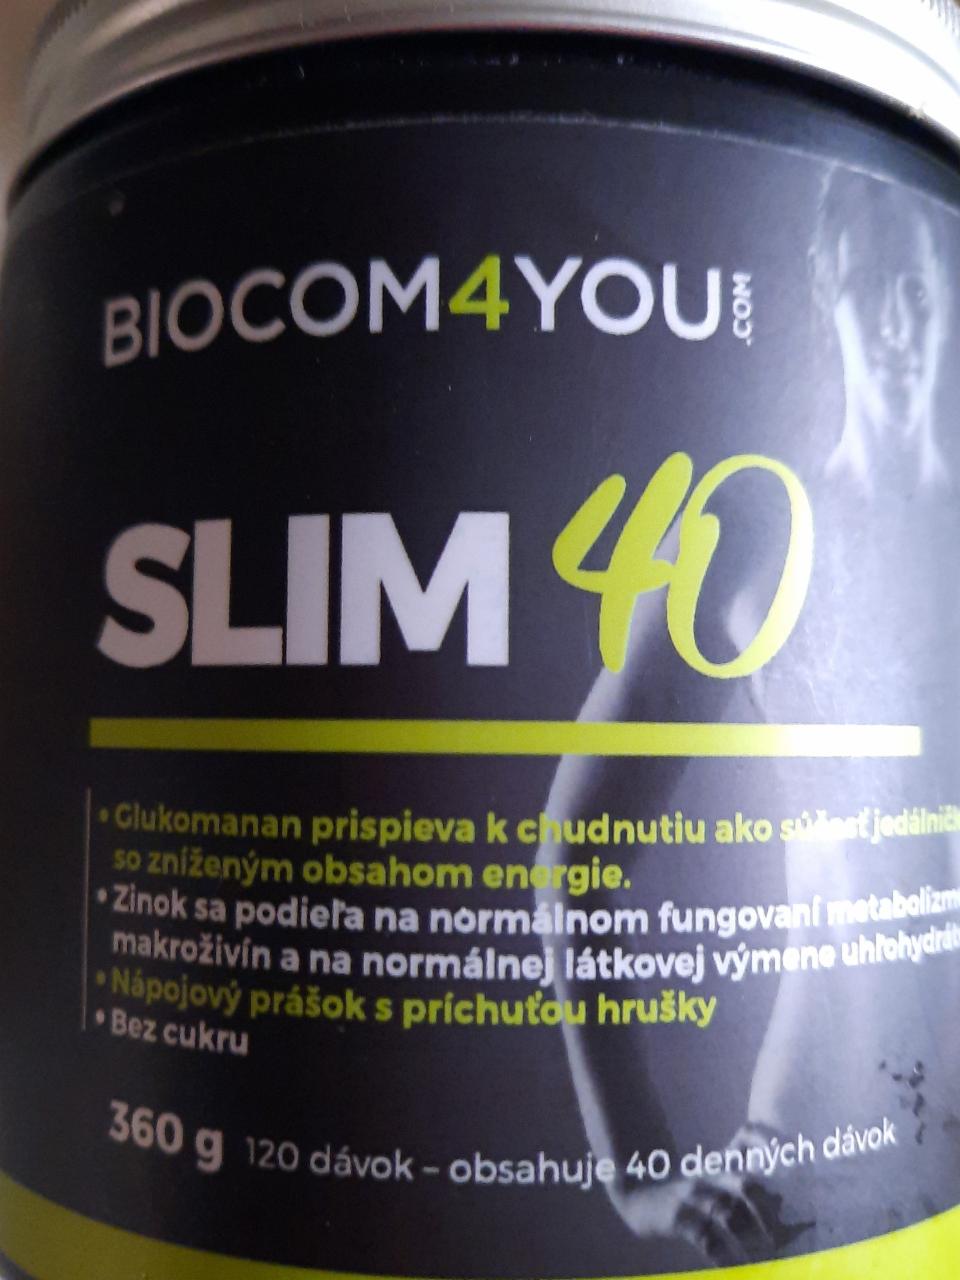 Fotografie - Slim 40 hruška Biocom4you